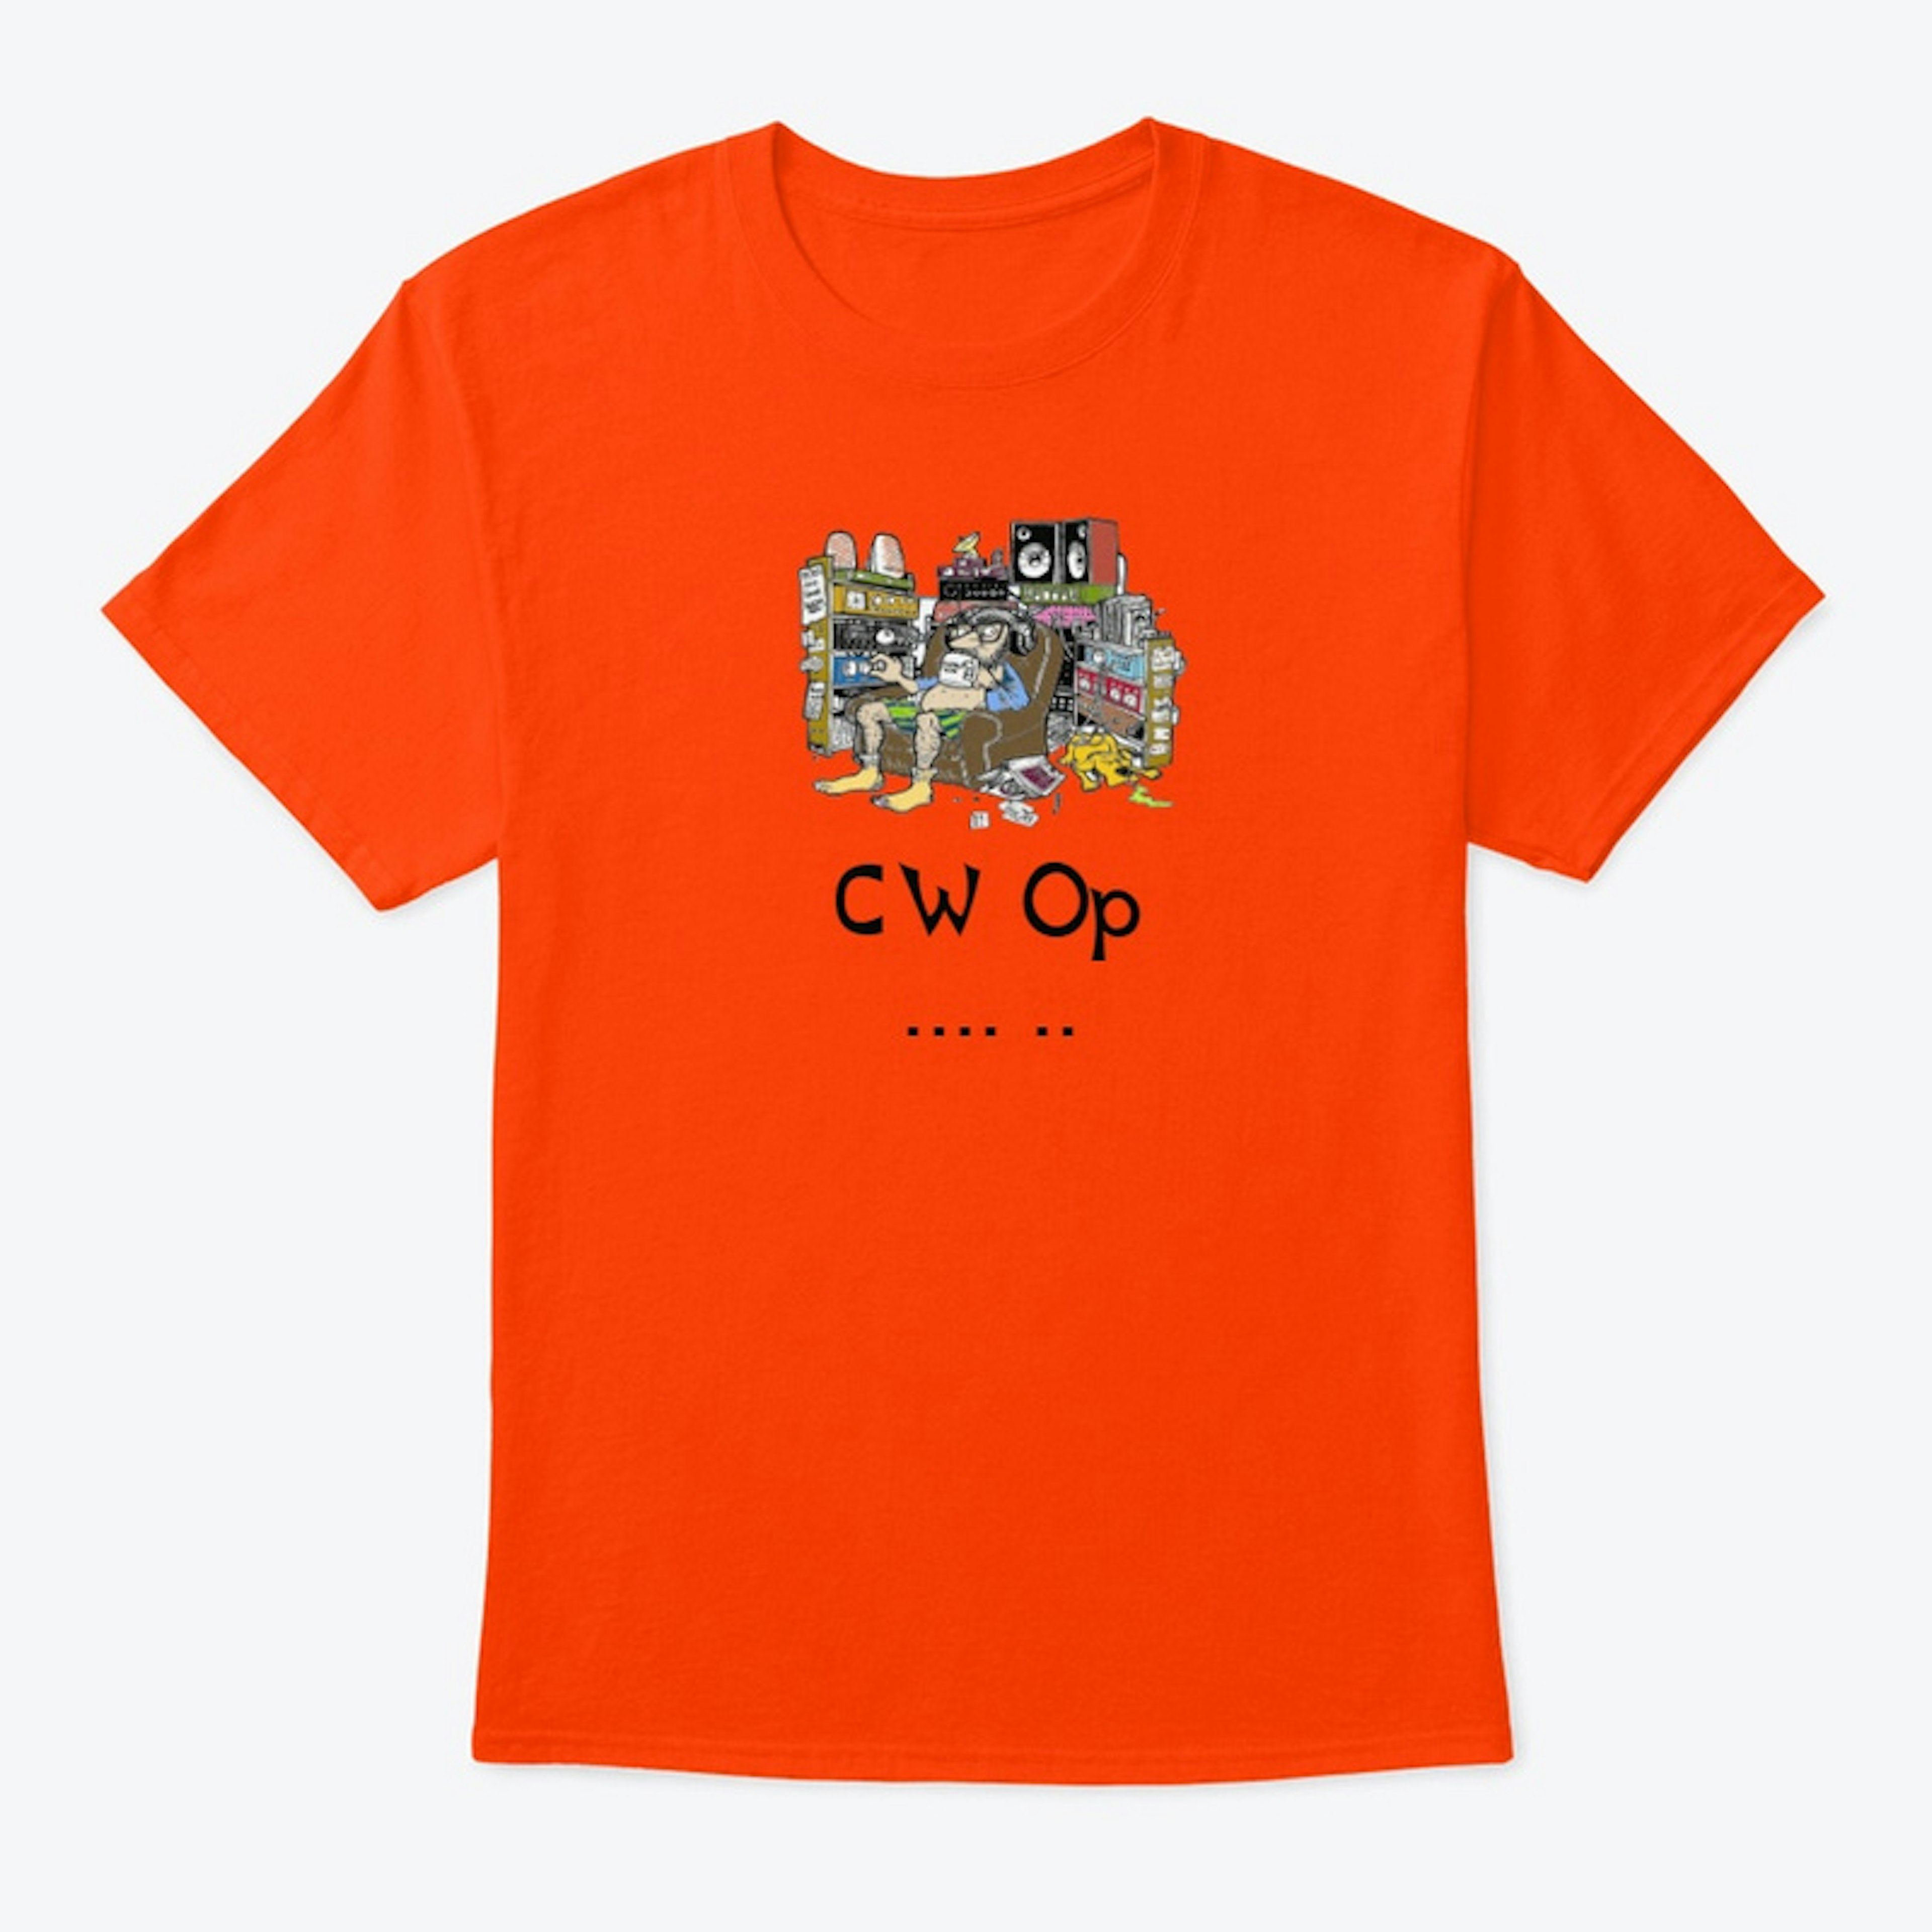 I'm a CW Op - Hi!